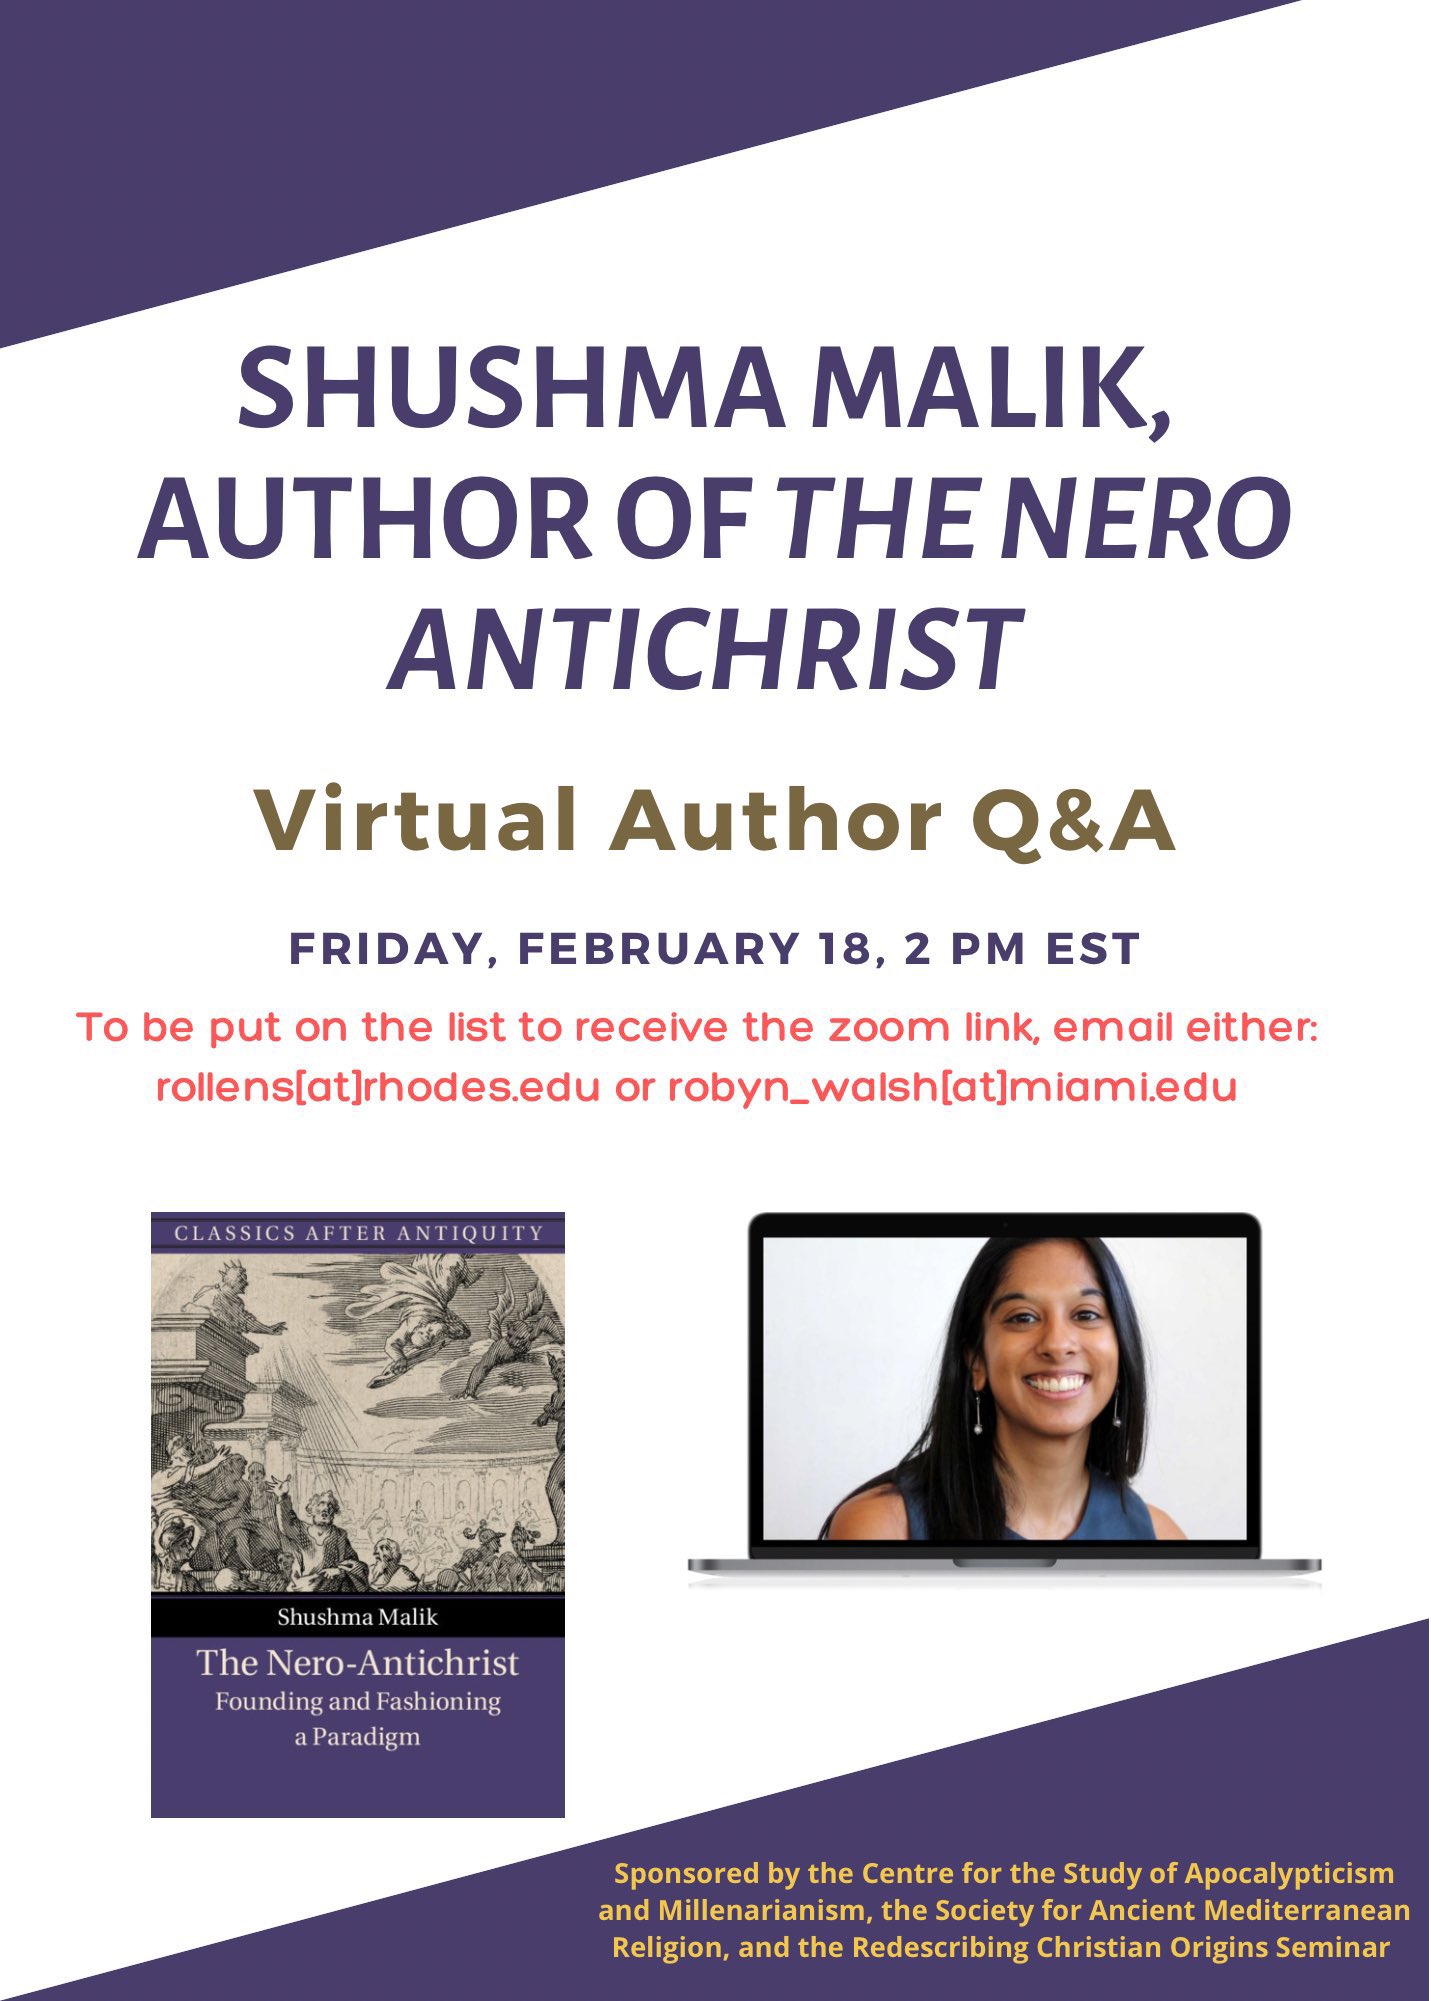 Upcoming: Q&A with Shushma Malik